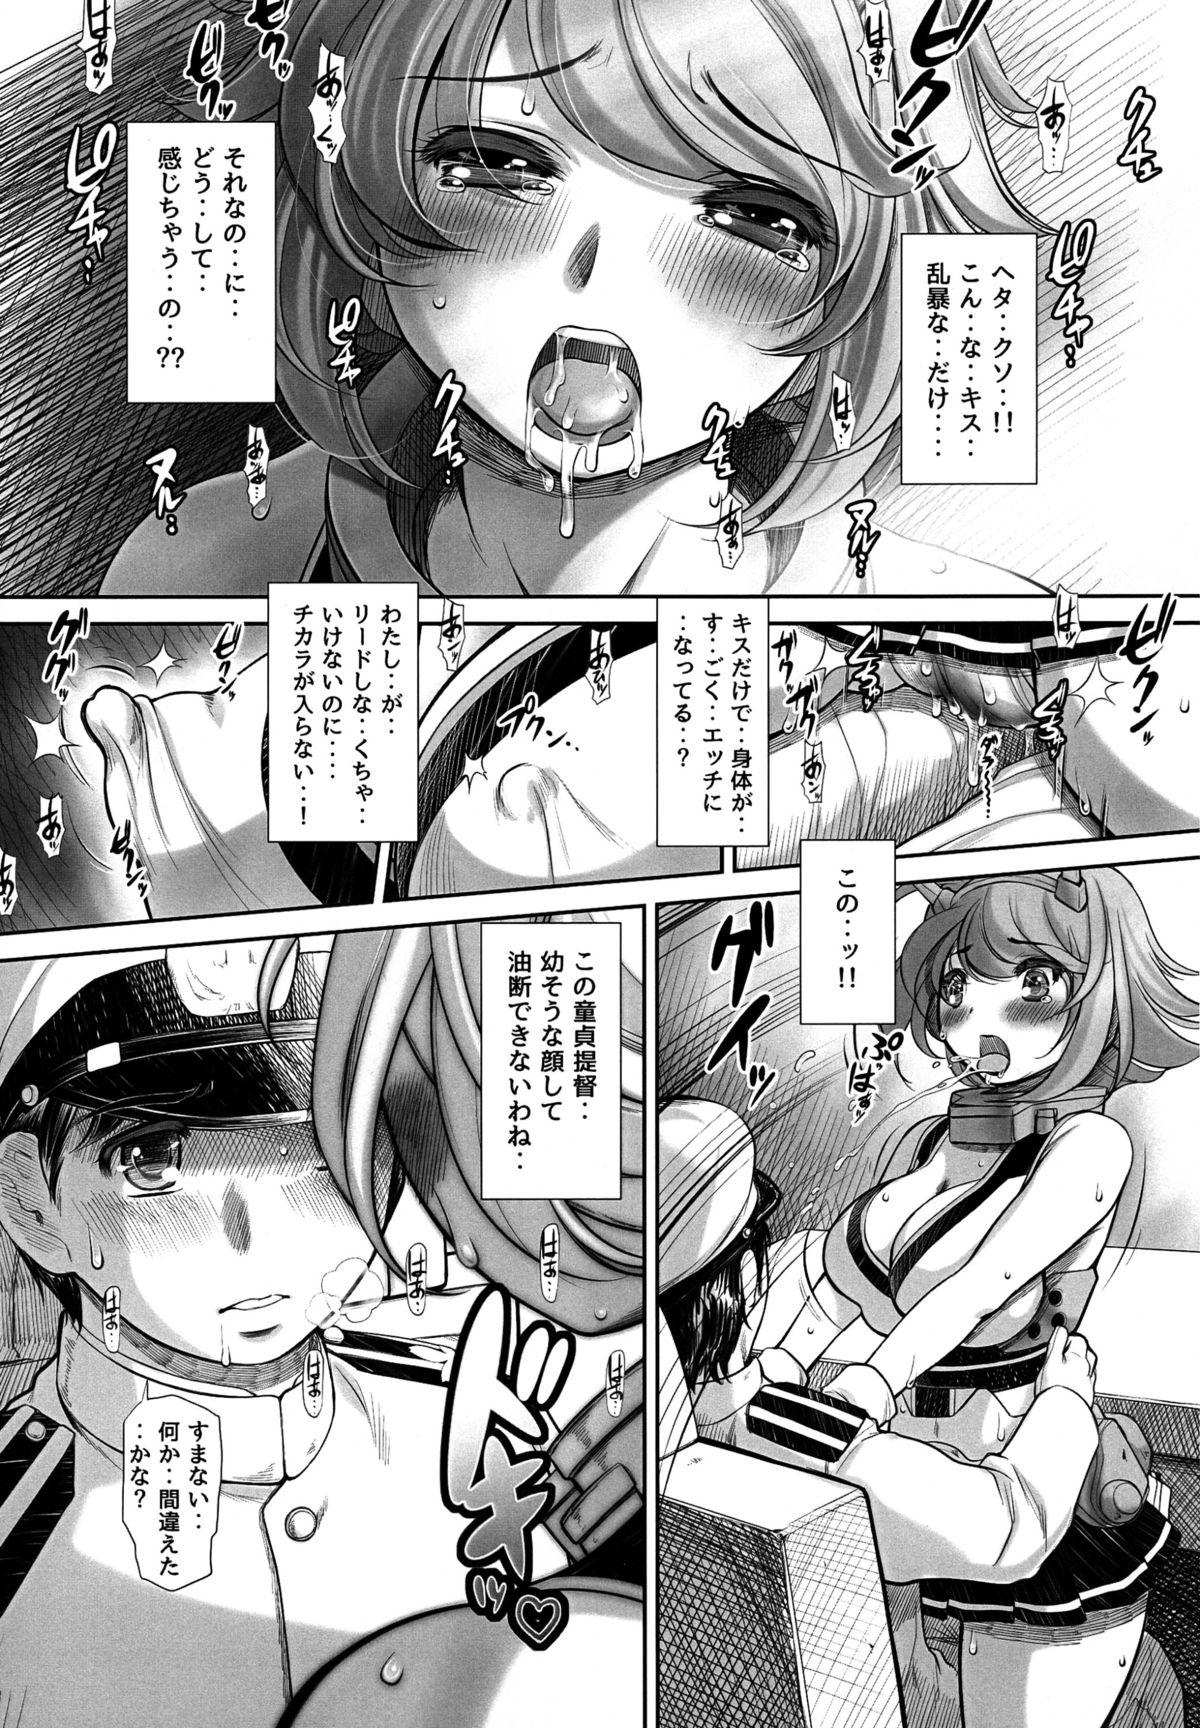 Amature Doutei ga Yurusareru no wa Shousa made dayo ne? - Kantai collection Monster Dick - Page 9